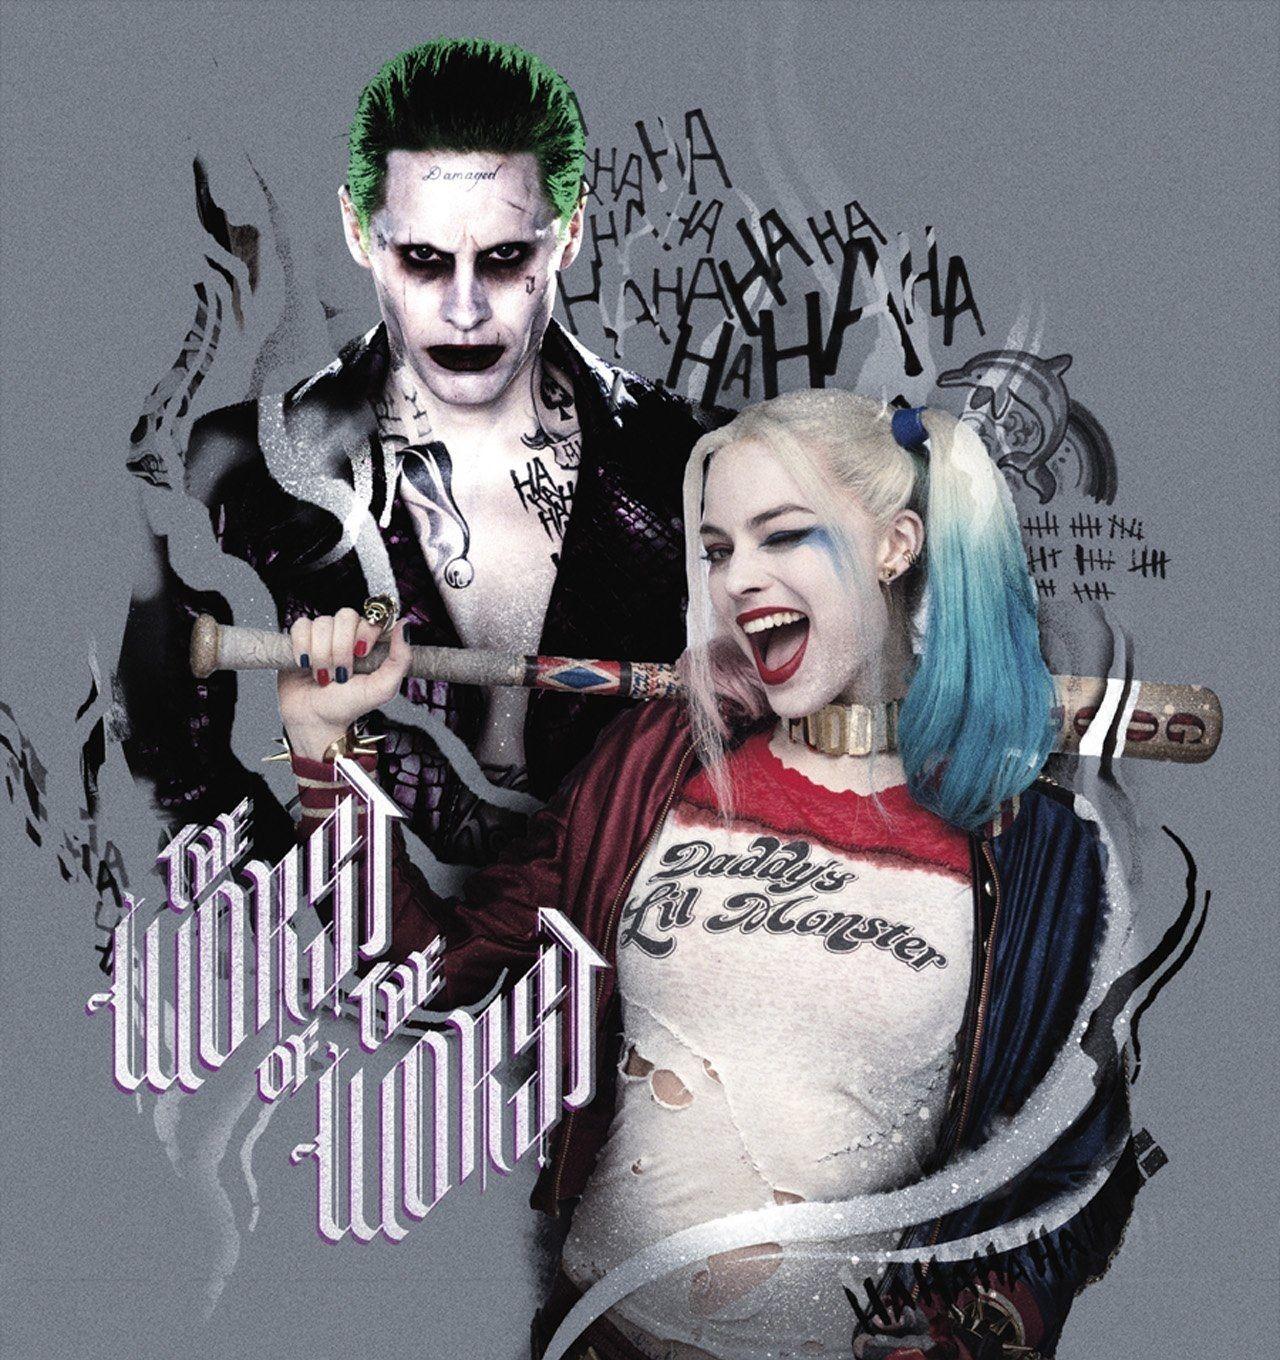 35 Gambar Joker and Harley Quinn Hd Wallpapers 1080p terbaru 2020